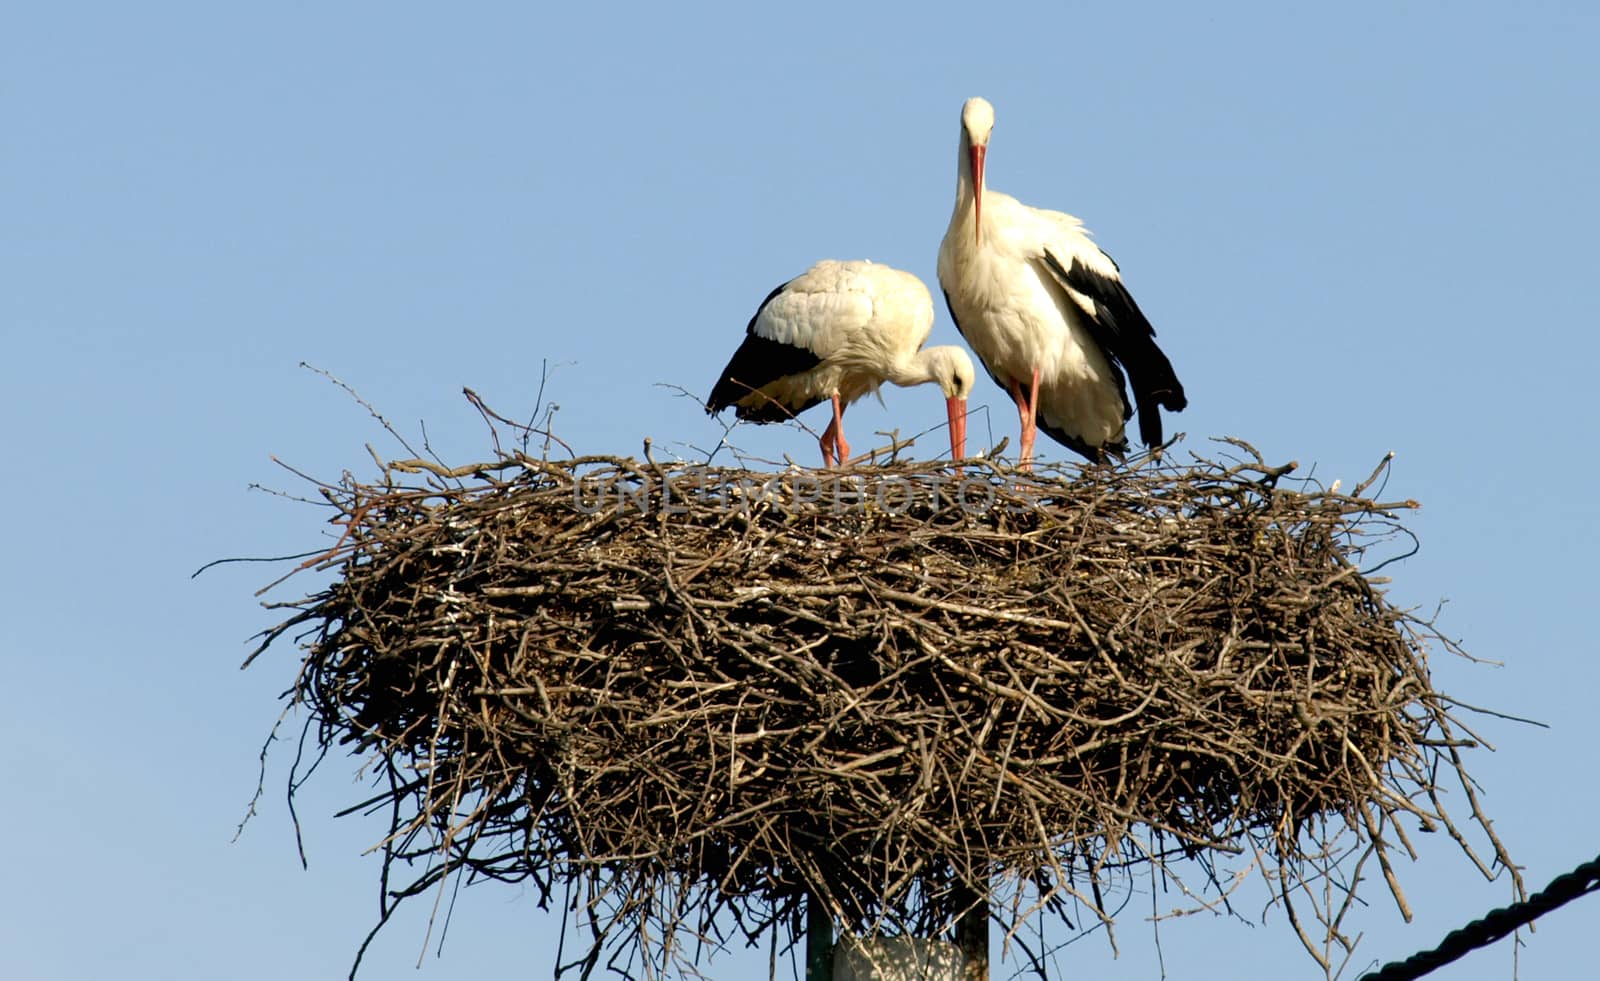 storks on a background of blue sky     